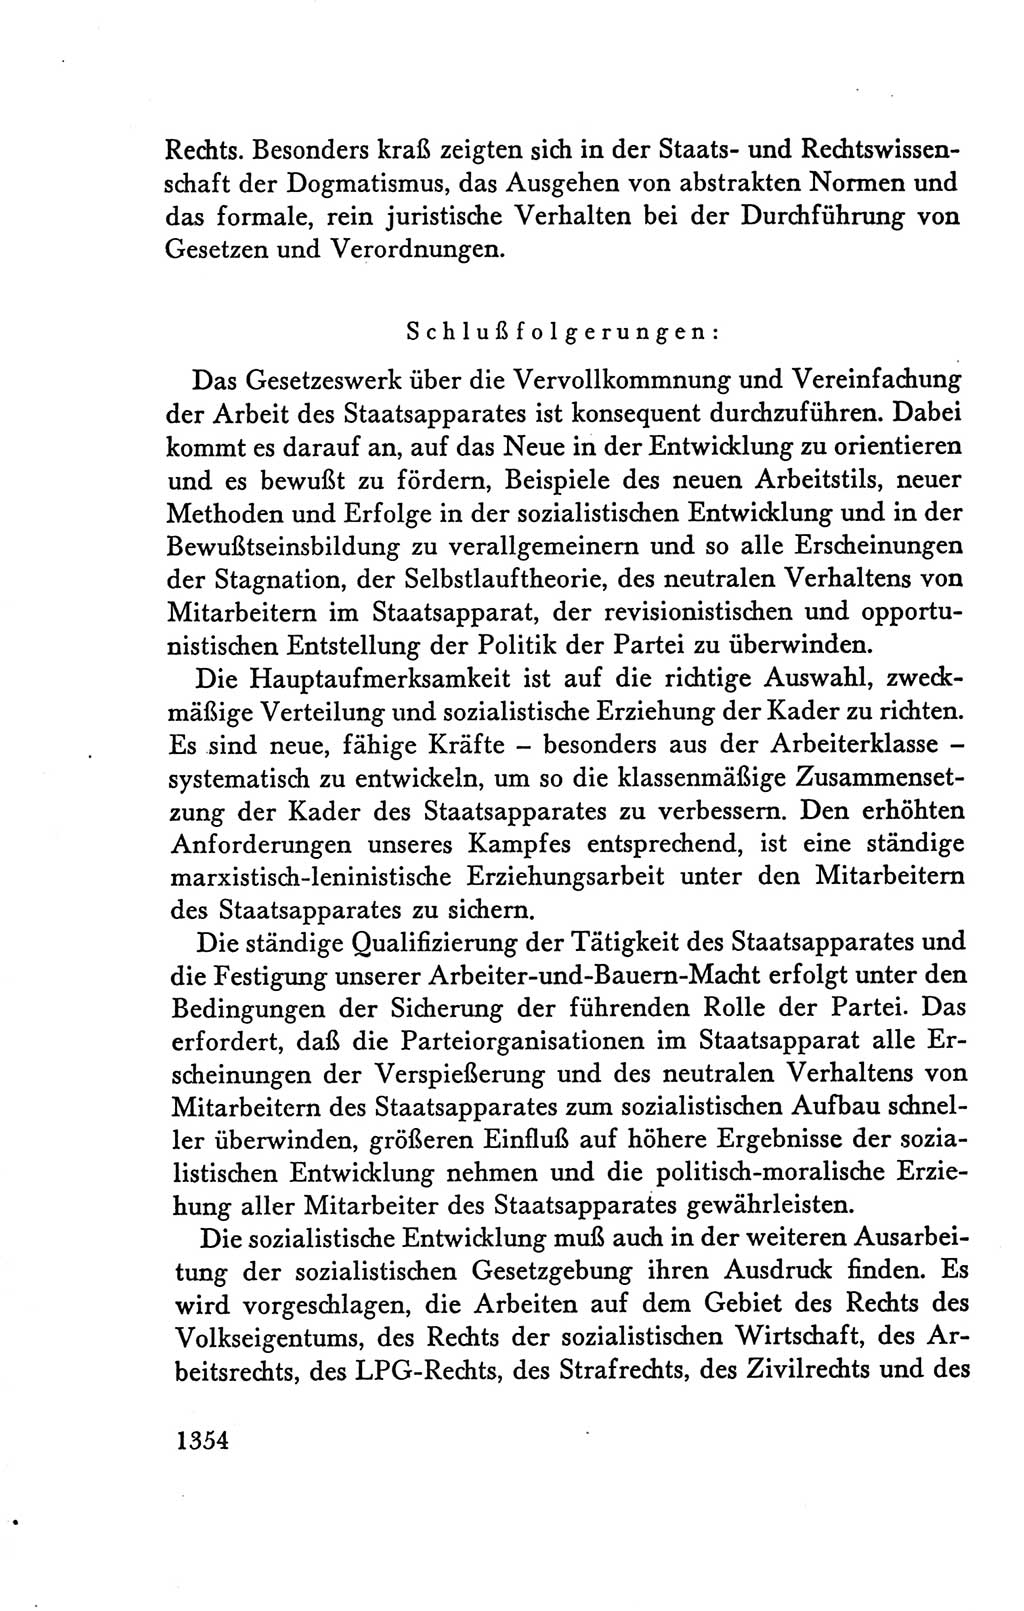 Protokoll der Verhandlungen des Ⅴ. Parteitages der Sozialistischen Einheitspartei Deutschlands (SED) [Deutsche Demokratische Republik (DDR)] 1958, Seite 1354